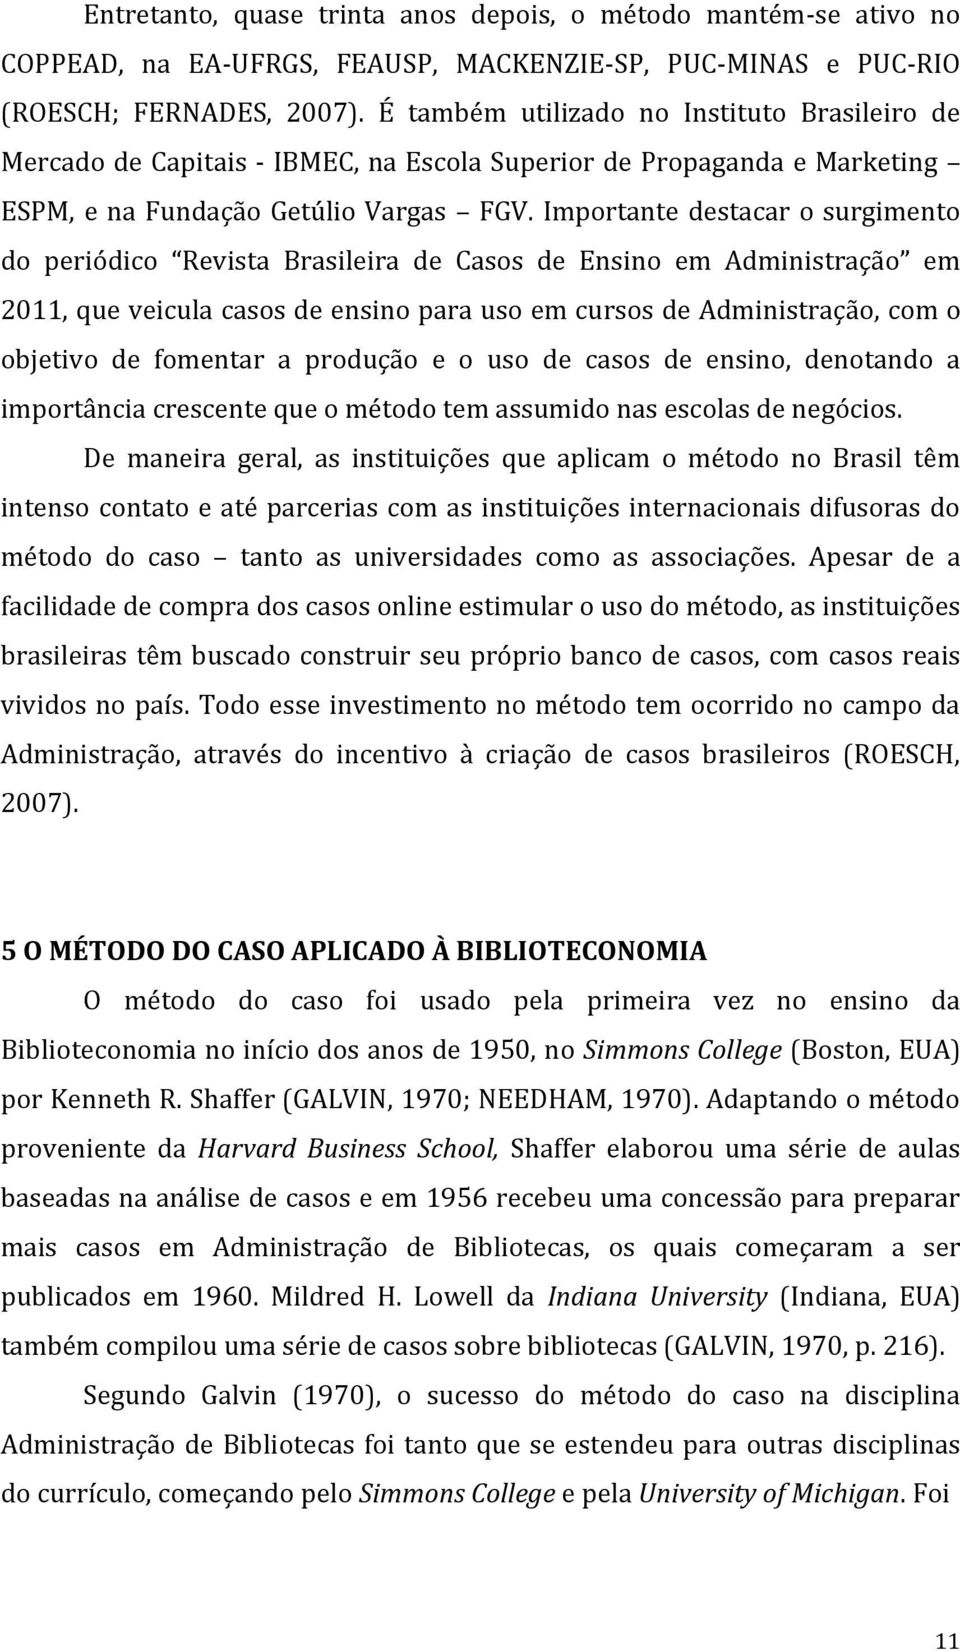 Importante destacar o surgimento do periódico Revista Brasileira de Casos de Ensino em Administração em 2011, que veicula casos de ensino para uso em cursos de Administração, com o objetivo de